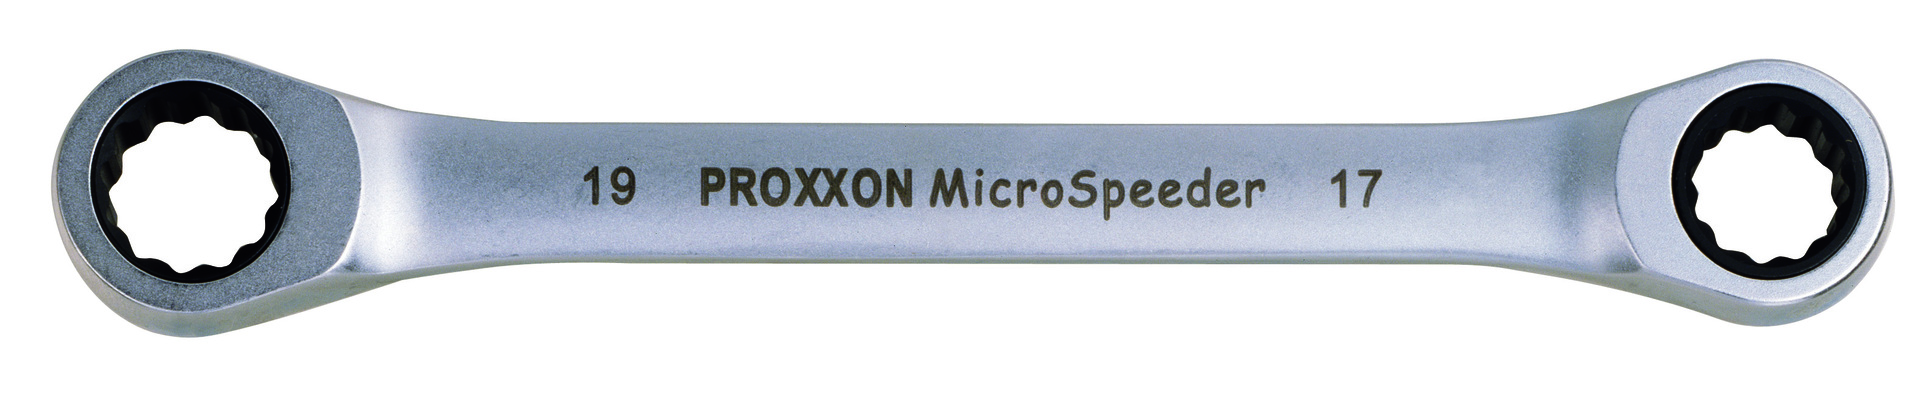 Micro-Speeder Ratschenschlüssel 10x13mm